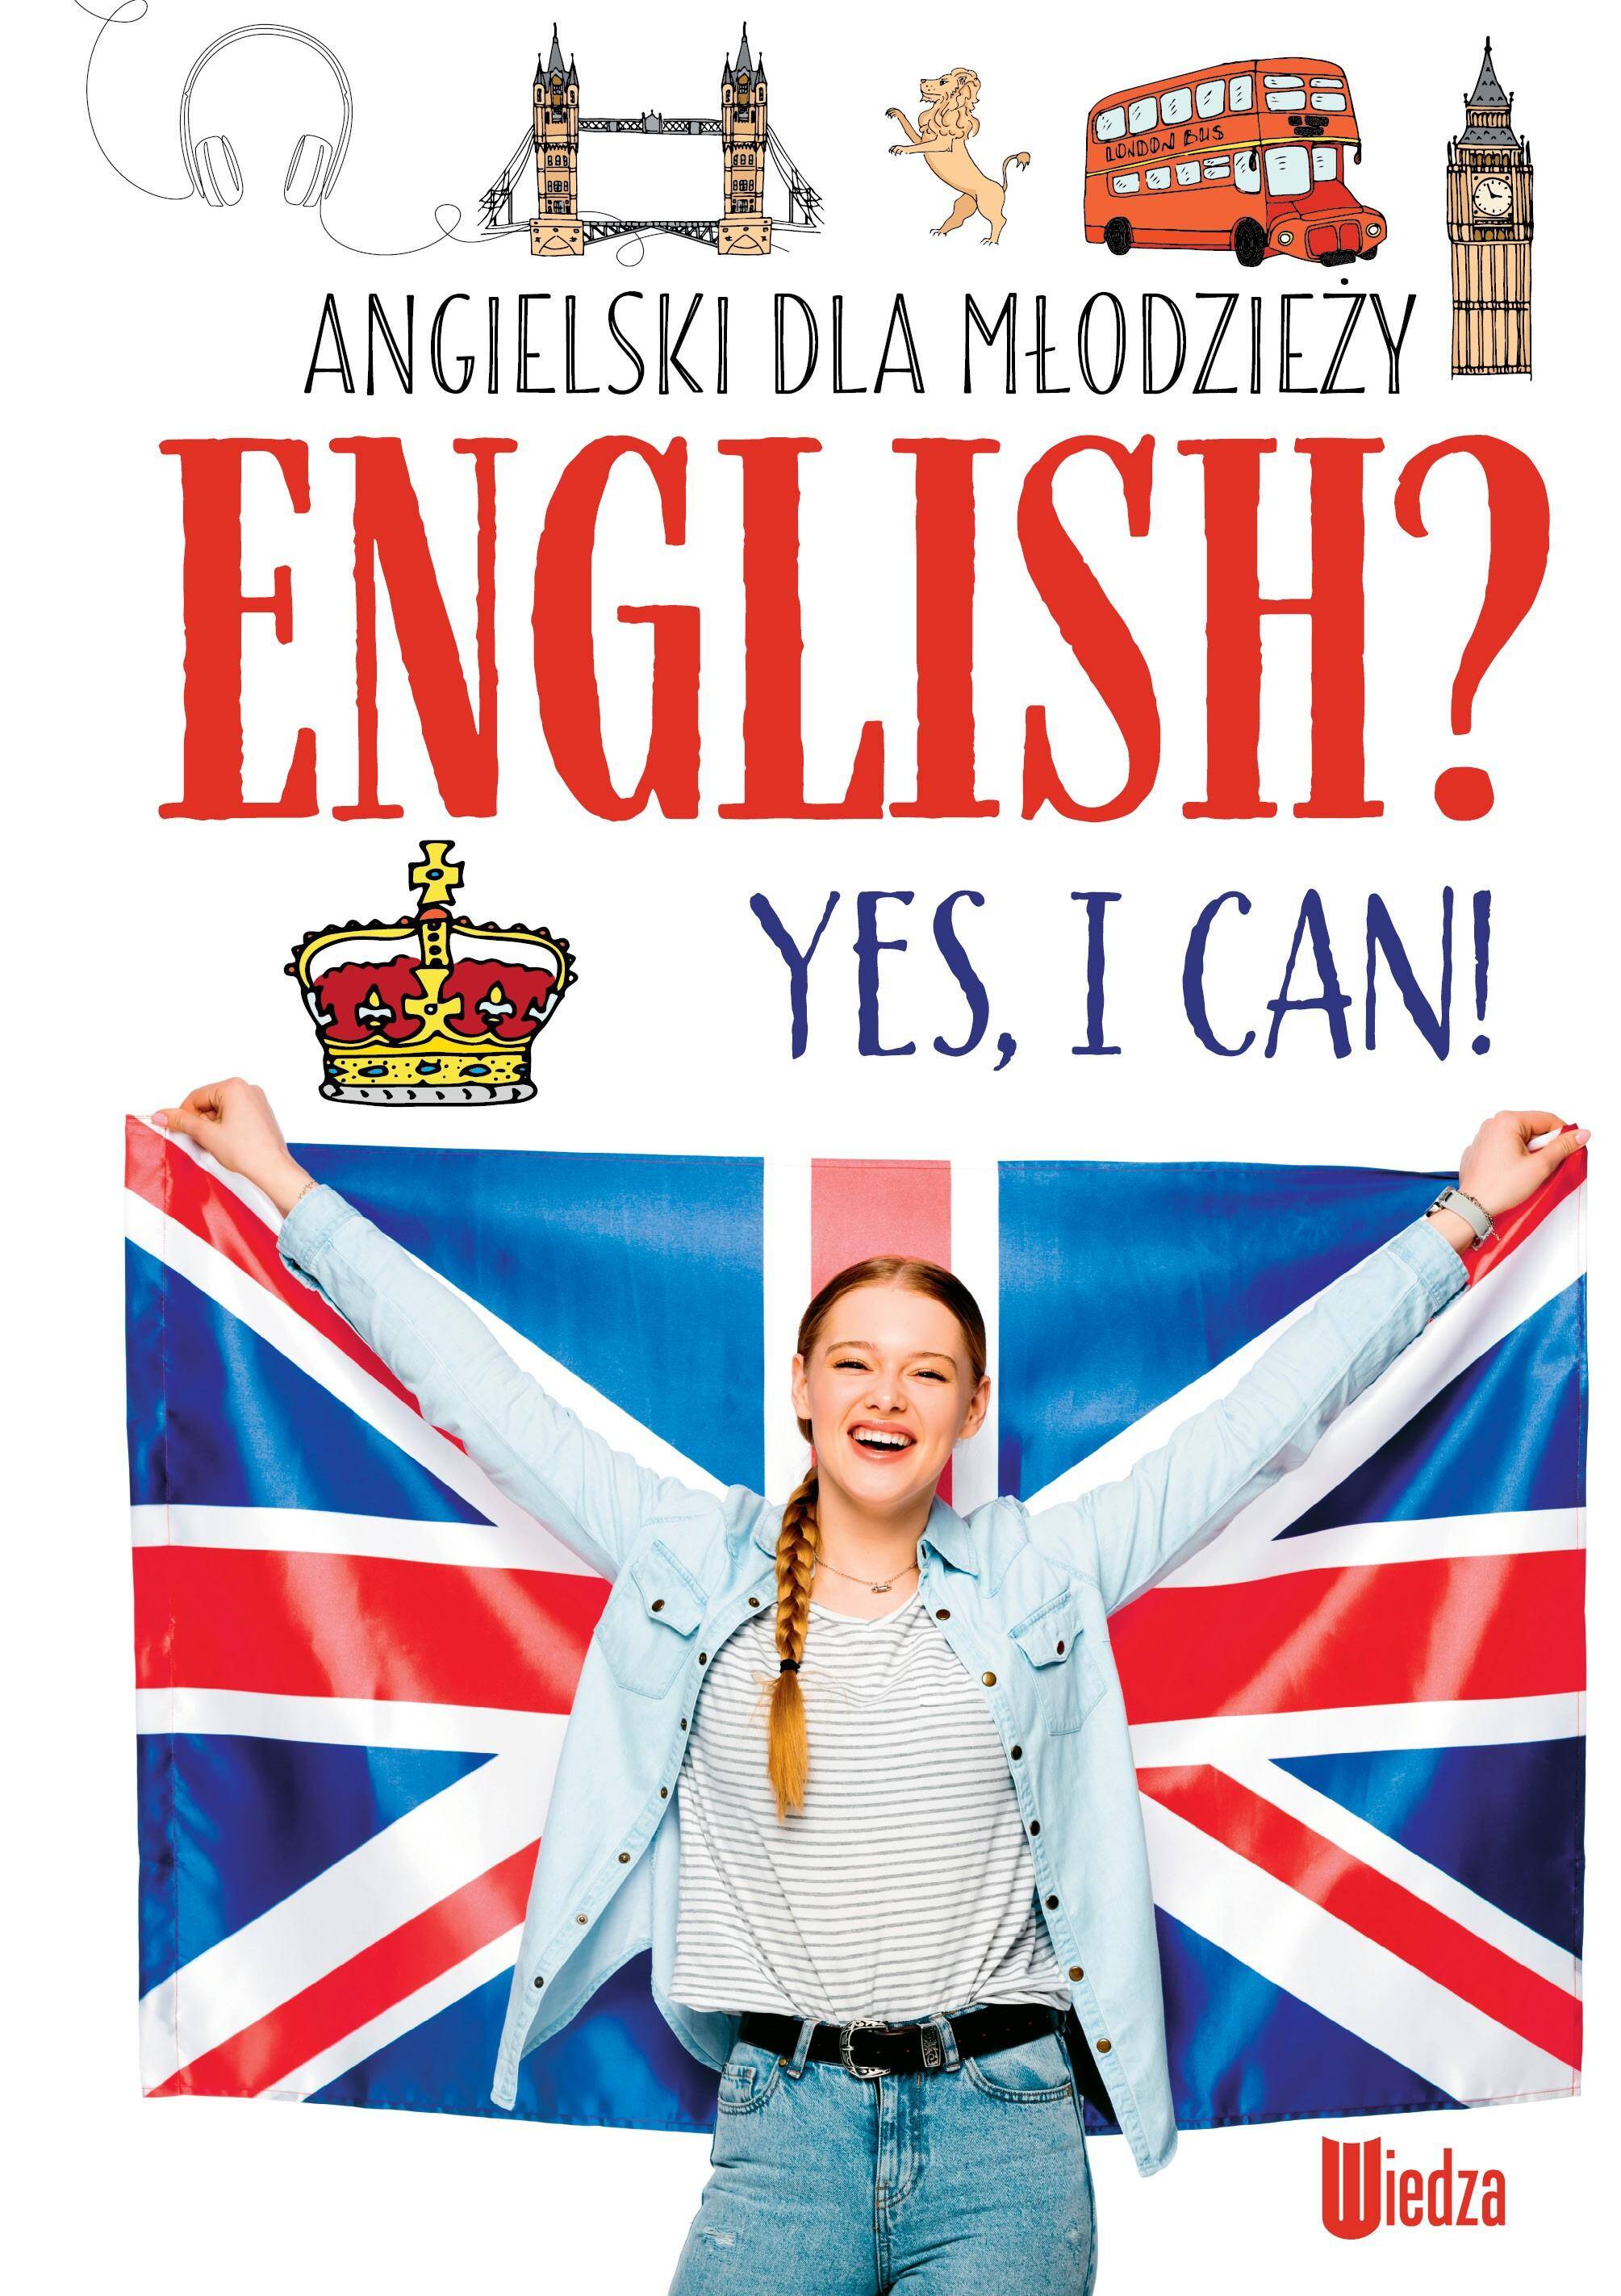 English? Yes, I can! Angielski dla młodzieży